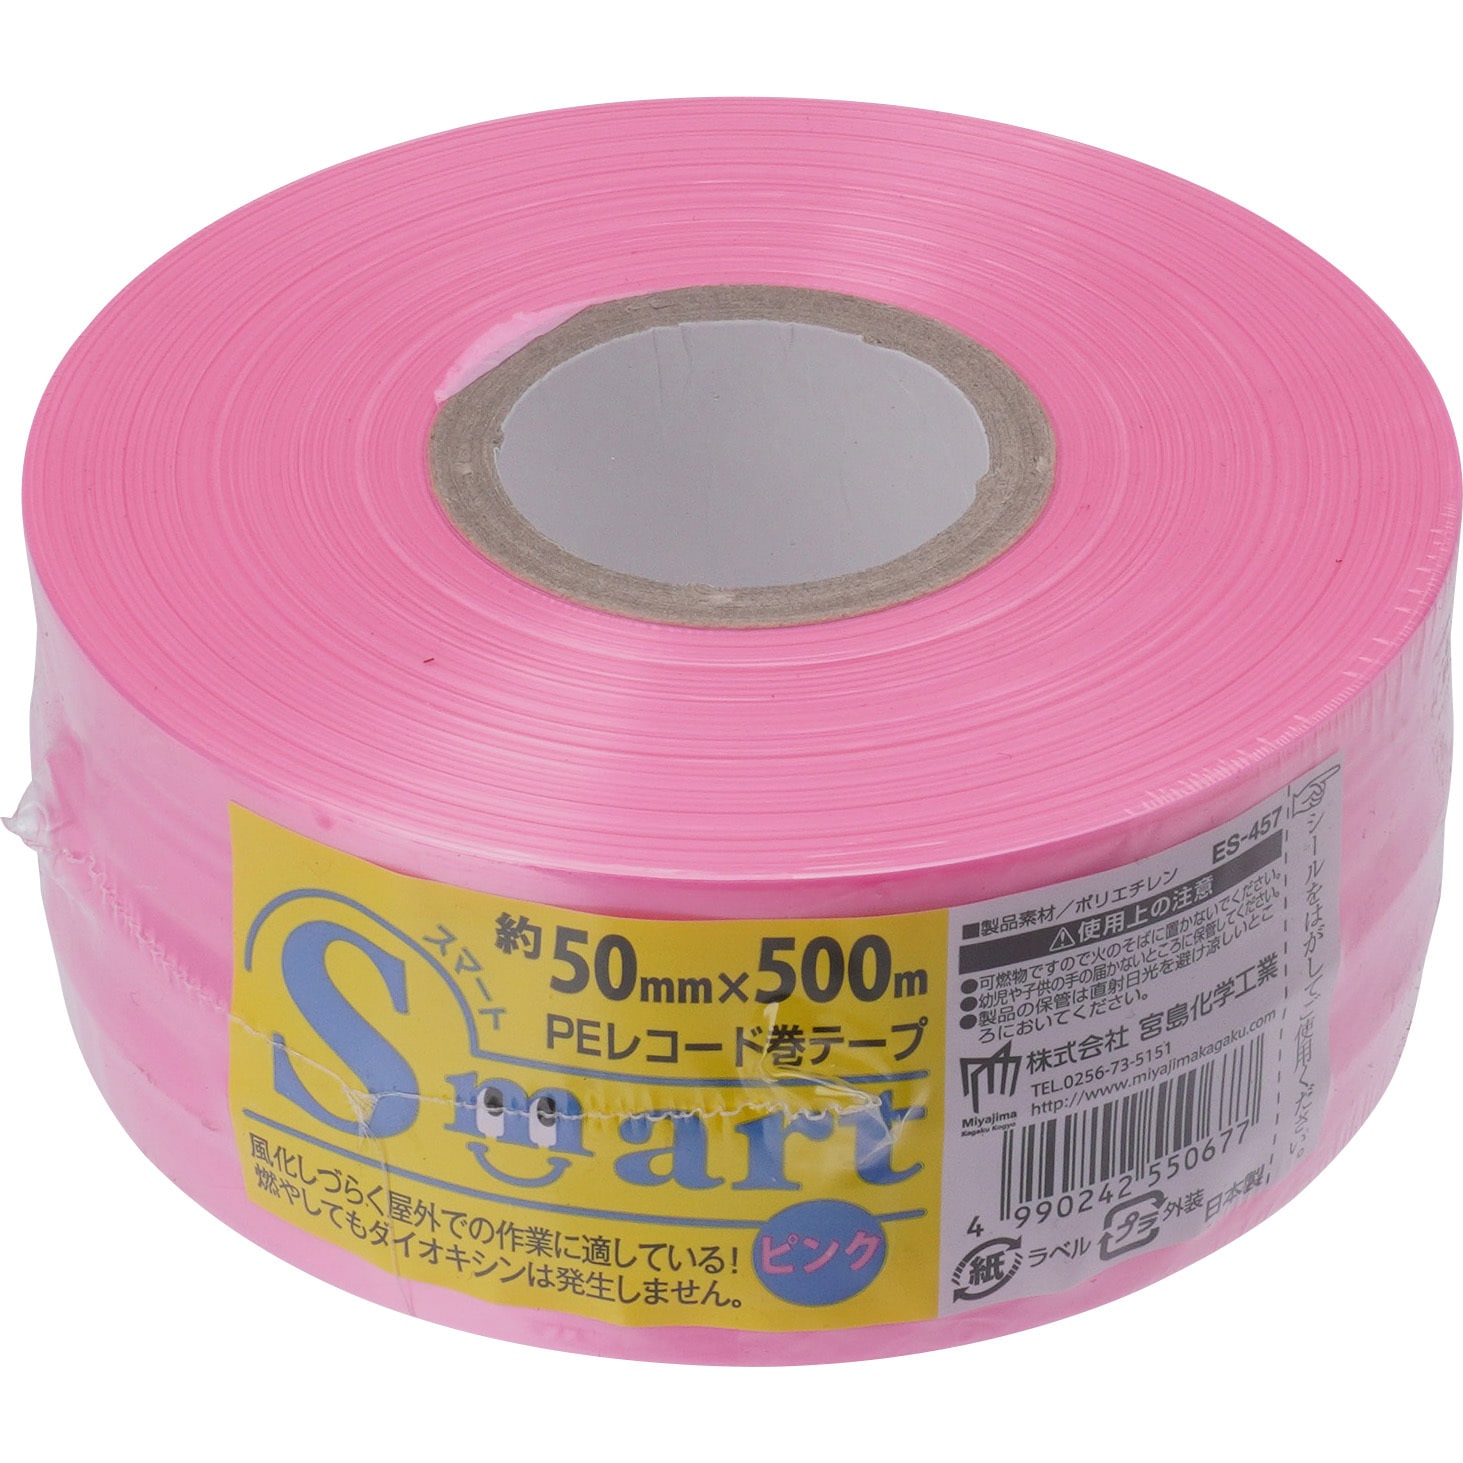 ローヤルシルバーテープ平巻ピンク50mm約500m30巻 - 2